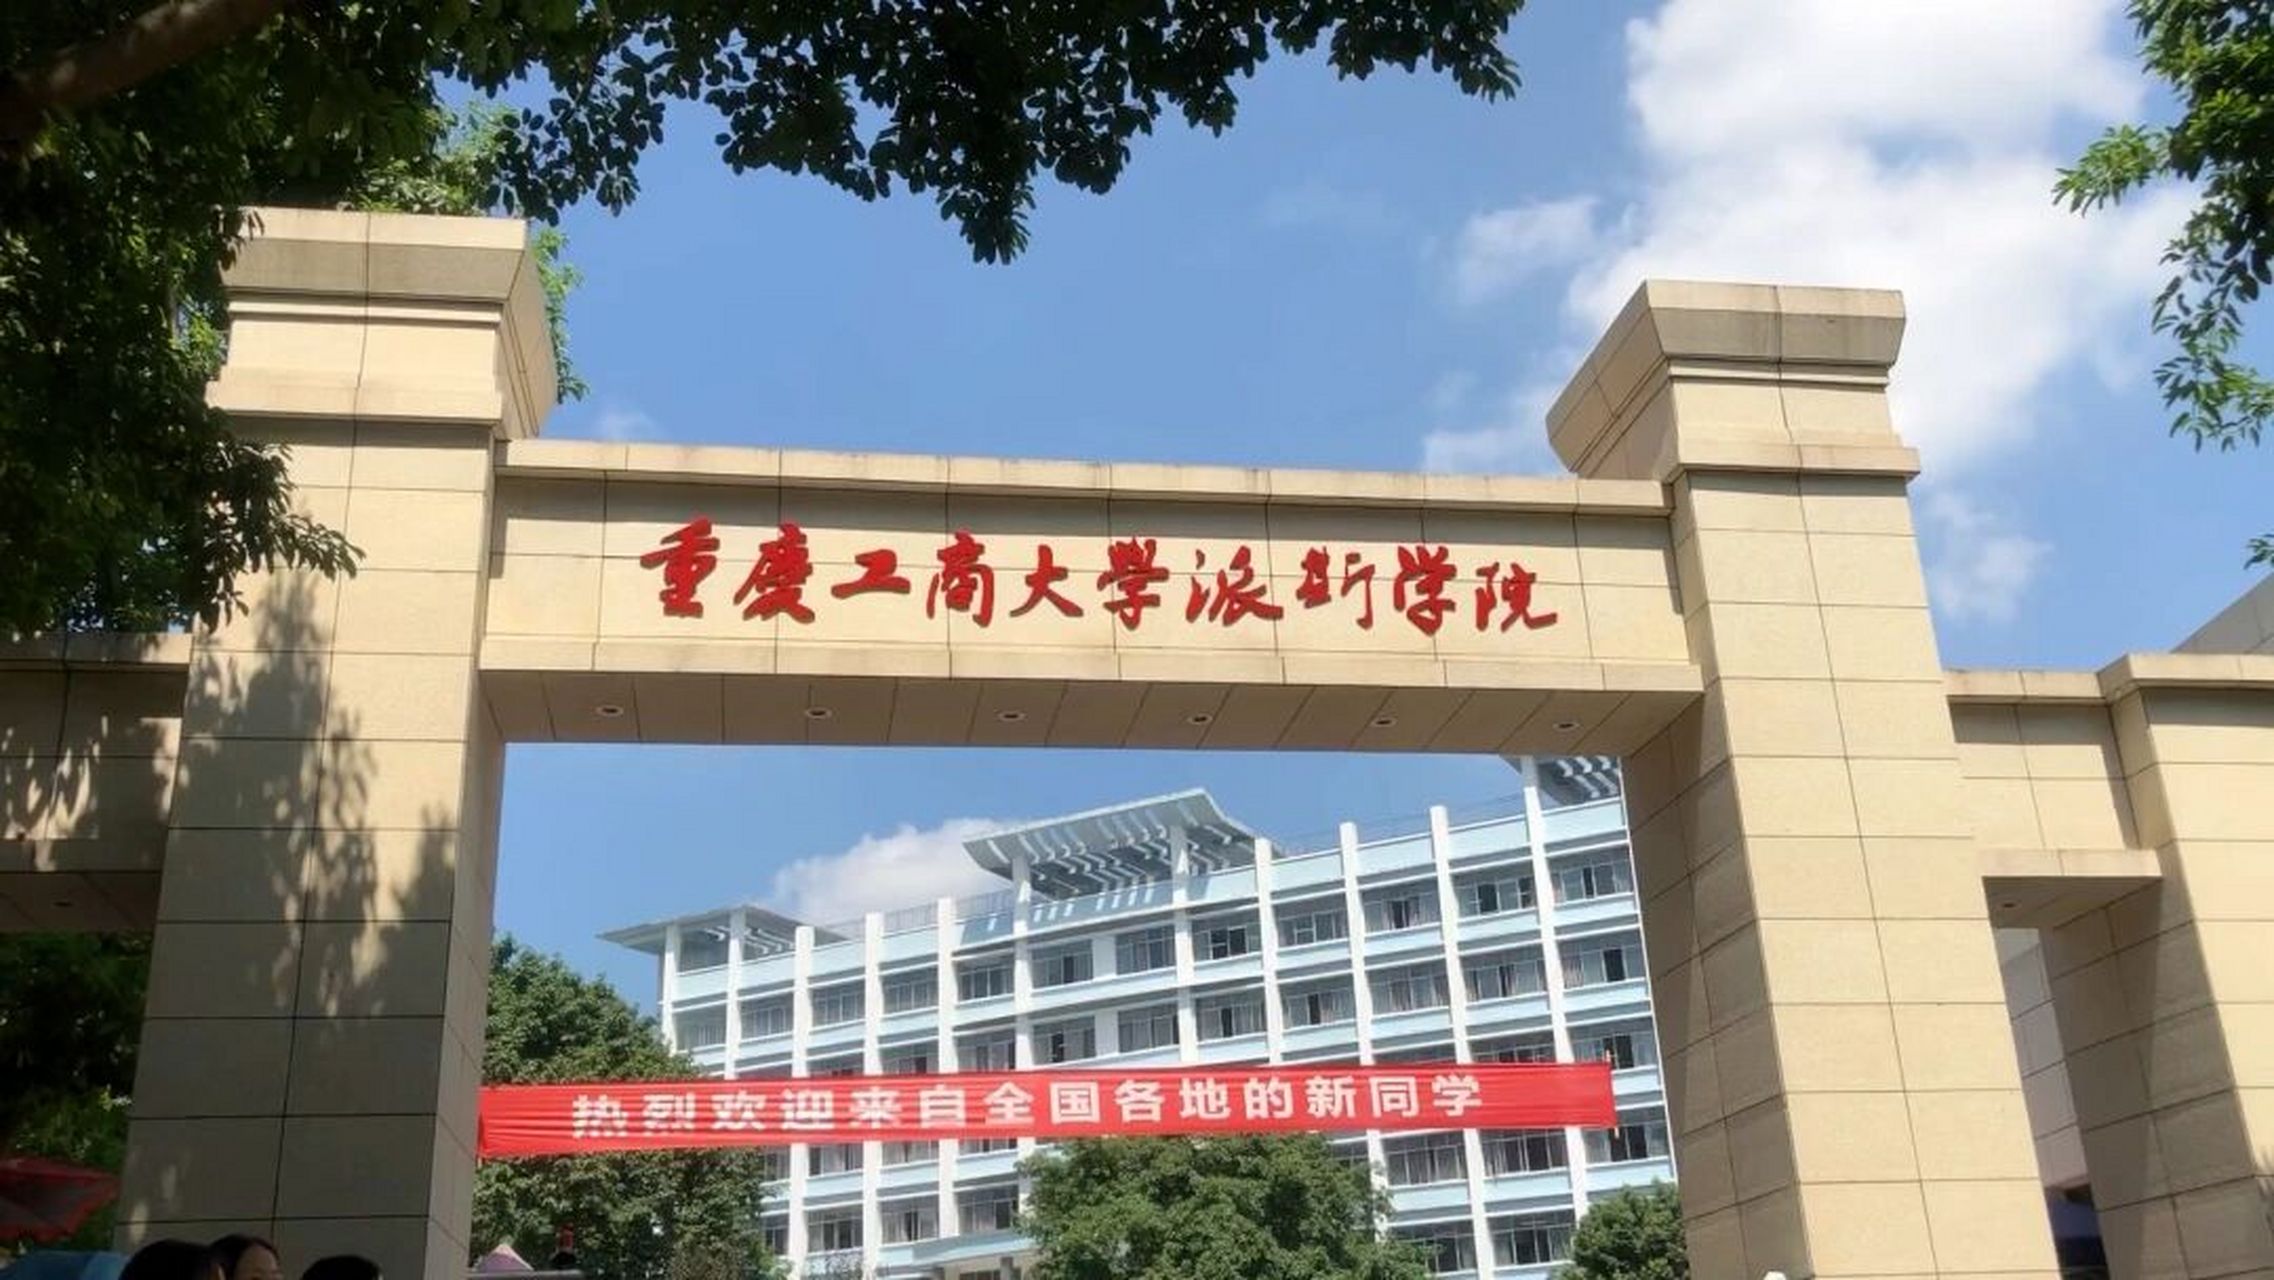 重庆工商大学派斯学院之2023新生须知篇 2023届的学弟学妹们好,首先